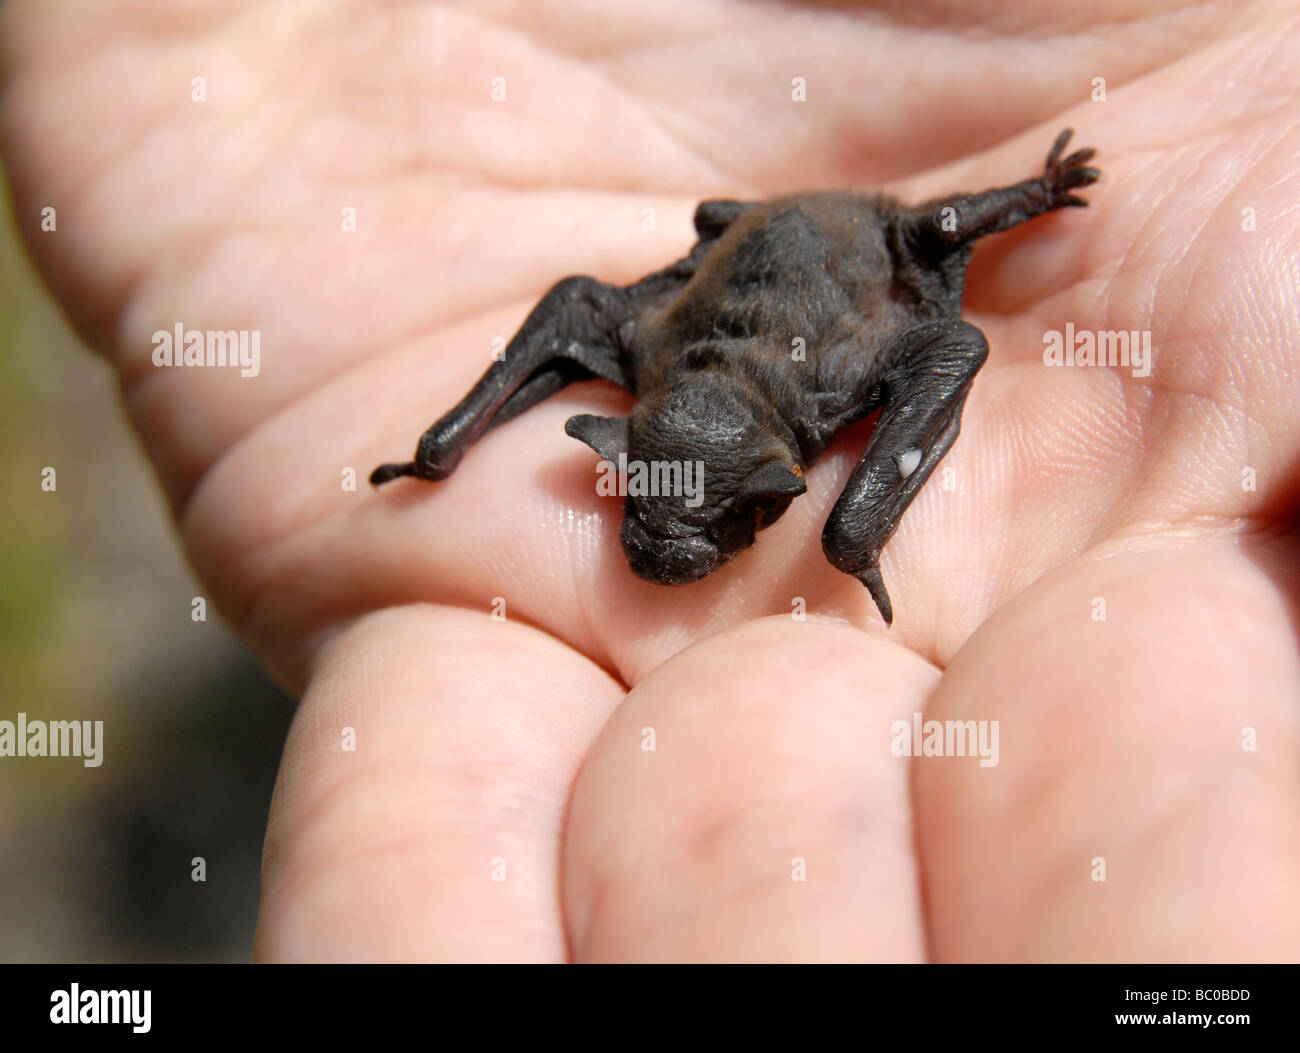 Un murciélago pipistrelle (común), de aproximadamente una semana de edad, en una mano Foto de stock